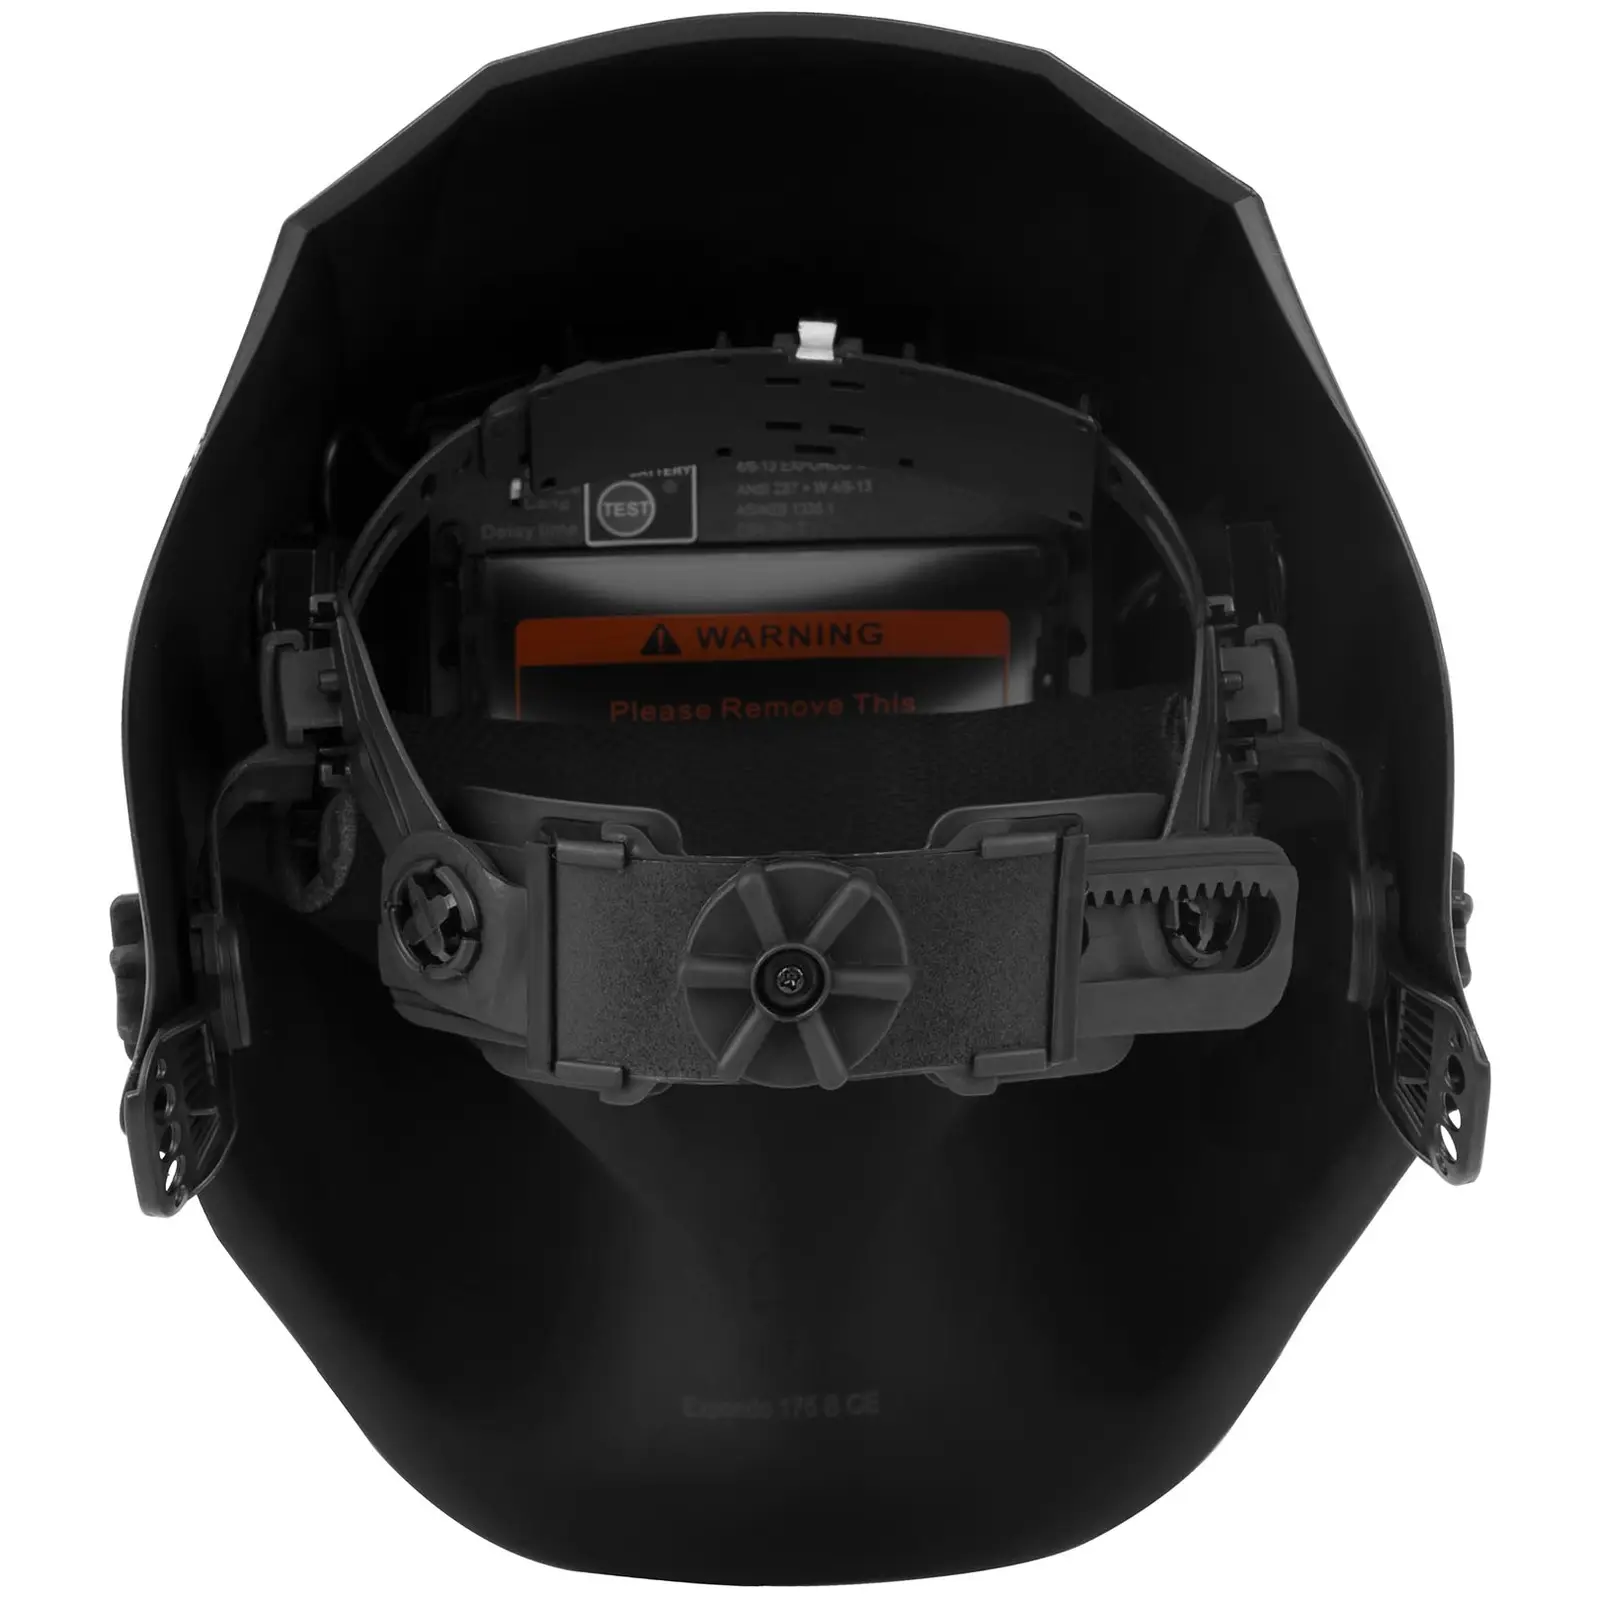 Careta de soldar - Black skull - advanced series